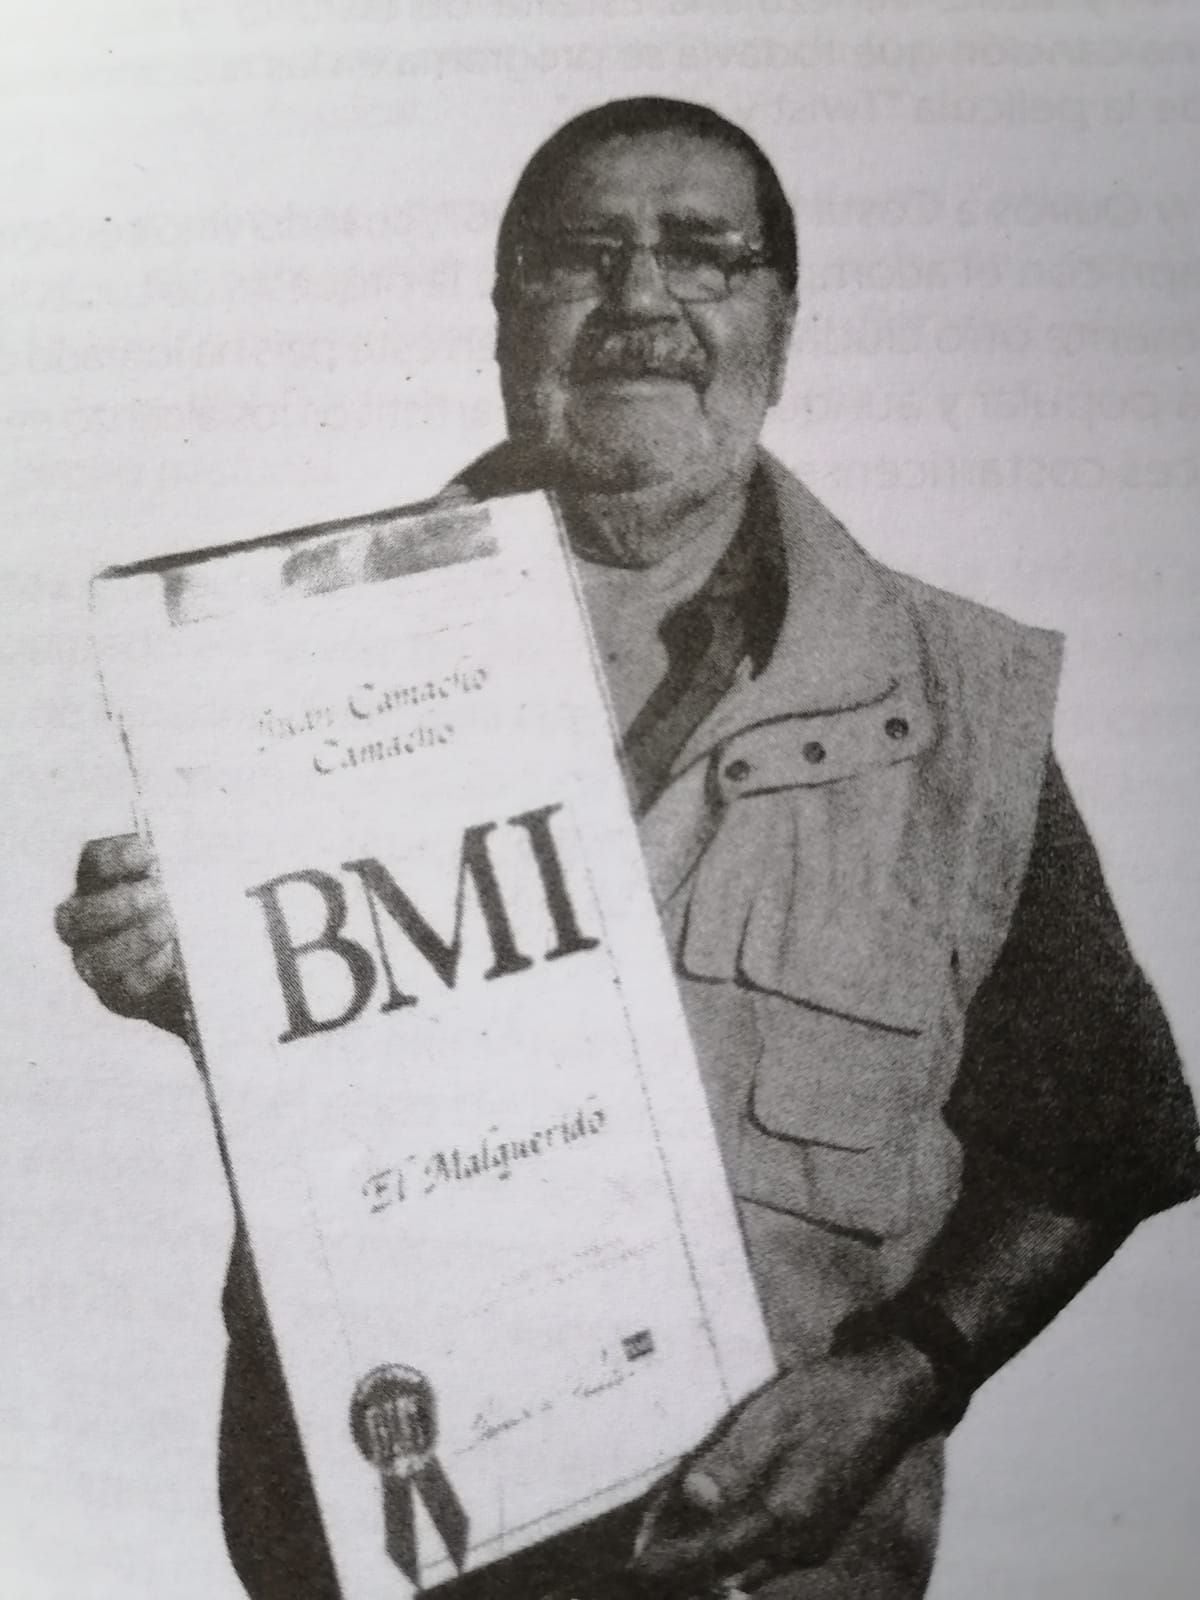 La compañía BMI le dio un reconocimiento al compositor costarricense Johnny Quirós por sus éxitos musicales, entre ellos la canción 'El malquerido'.